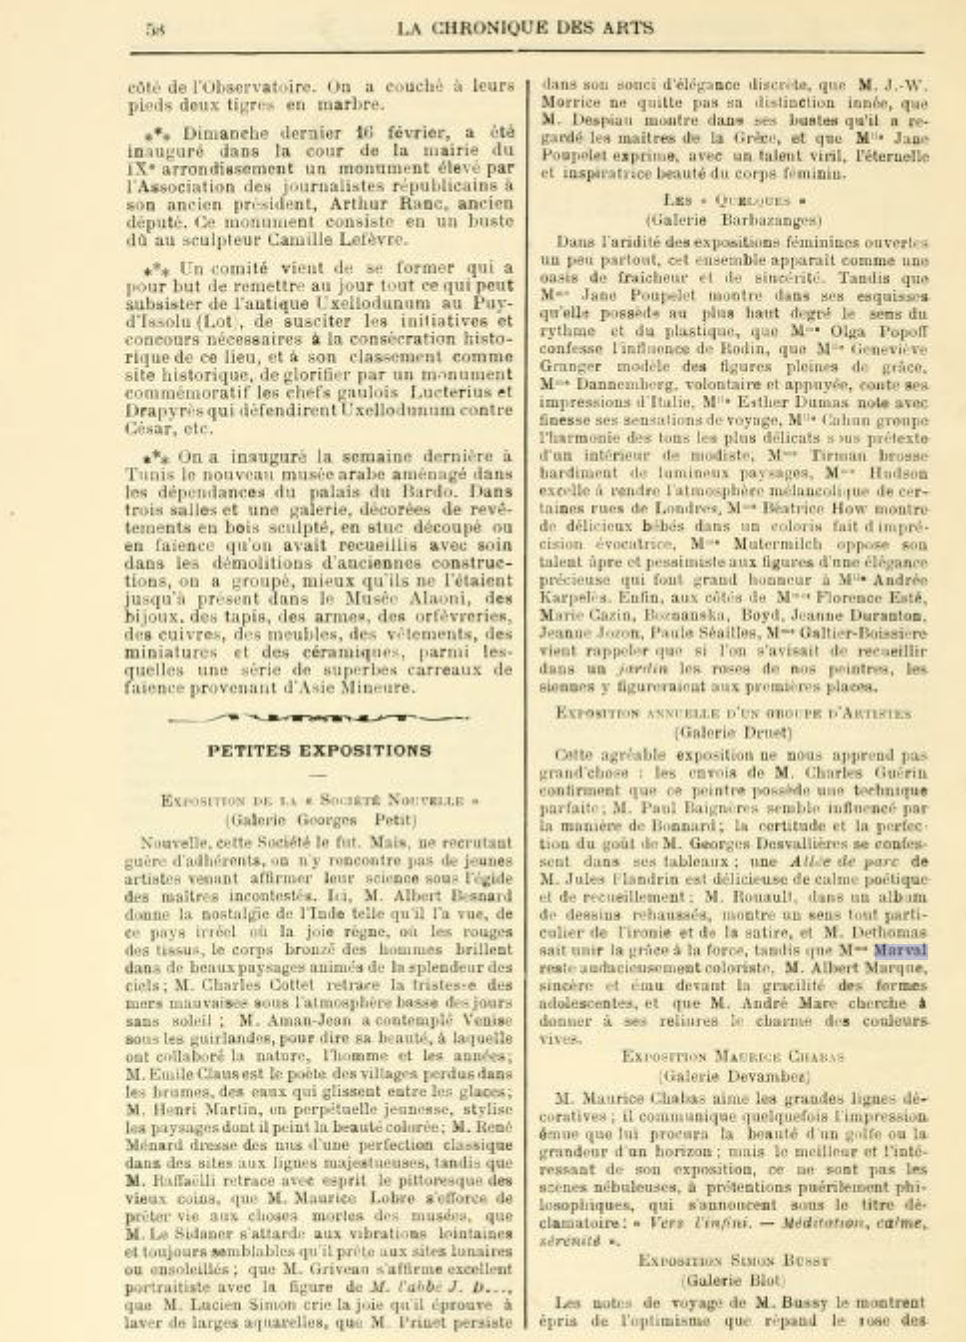  Chronique des Arts et de la Curiosité, Gazette des Beaux-Arts, février 1913